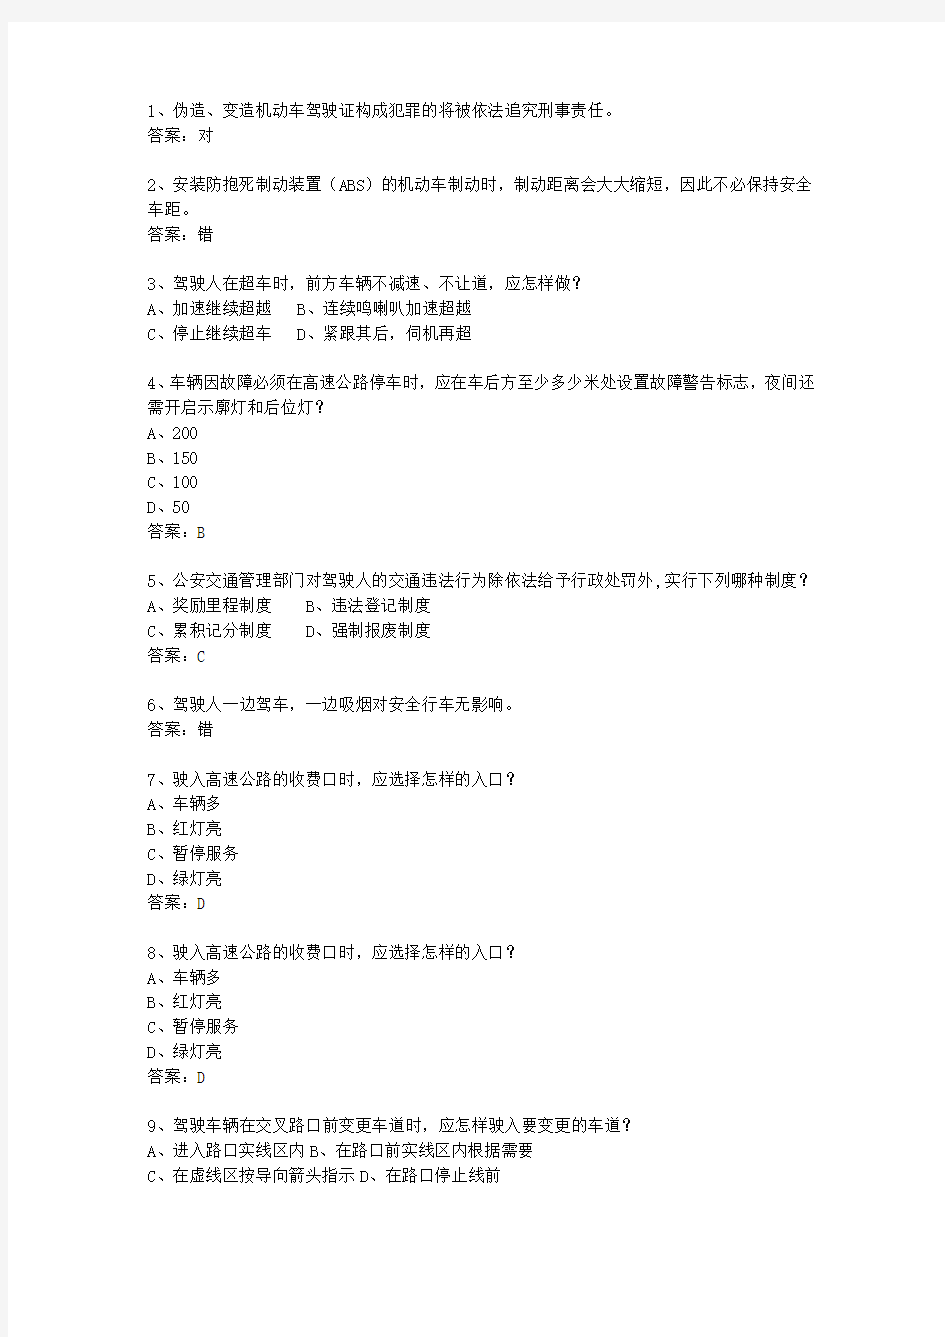 2011西藏自治区驾校考试科目一C1最新考试题库(完整版)_图文